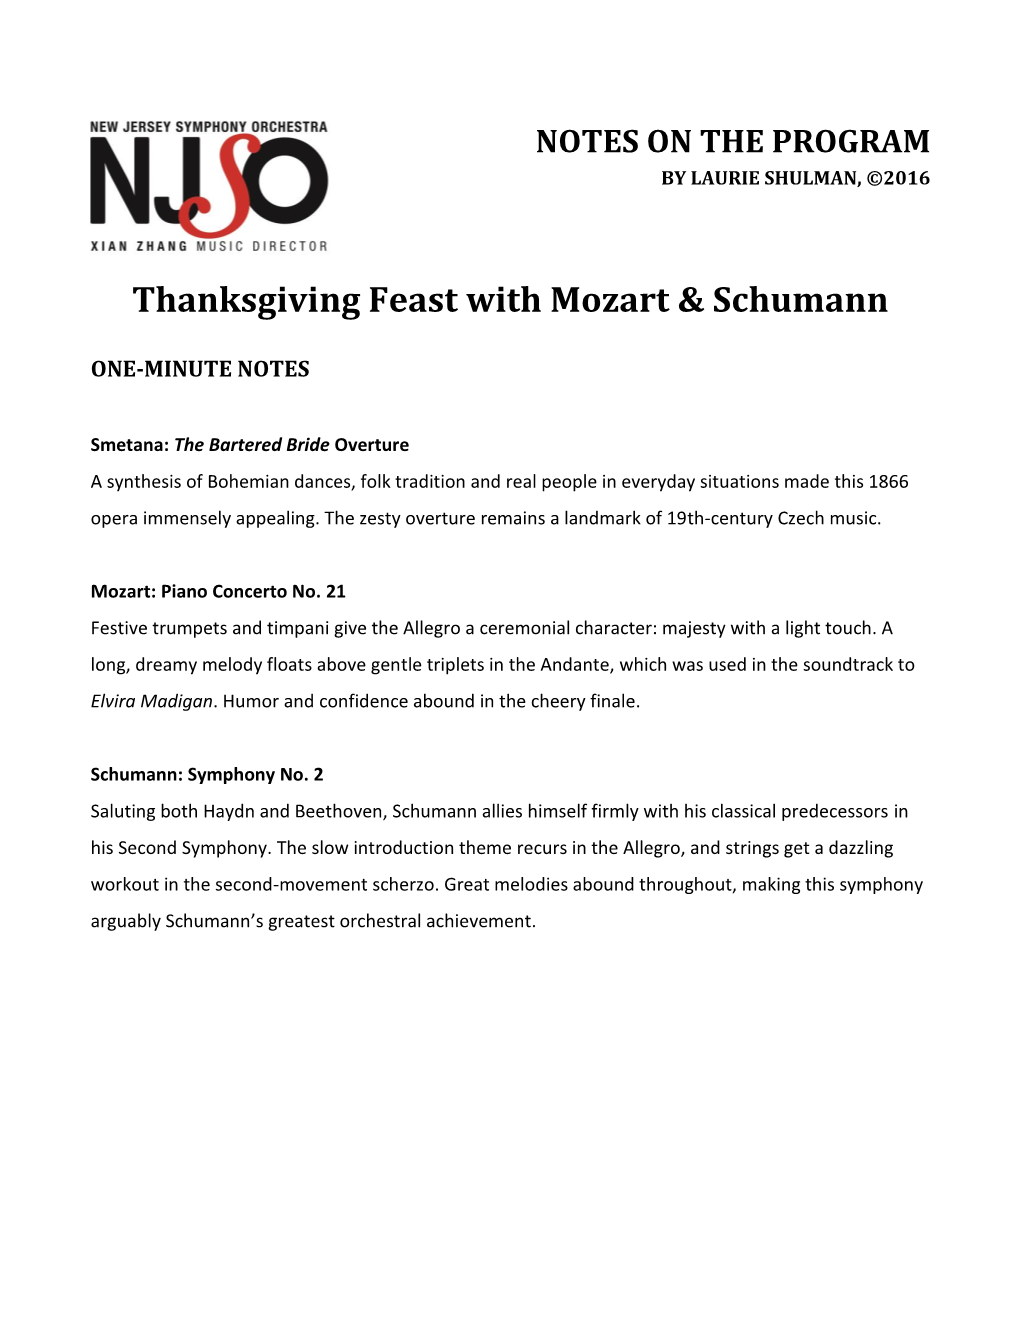 Thanksgiving Feast with Mozart & Schumann